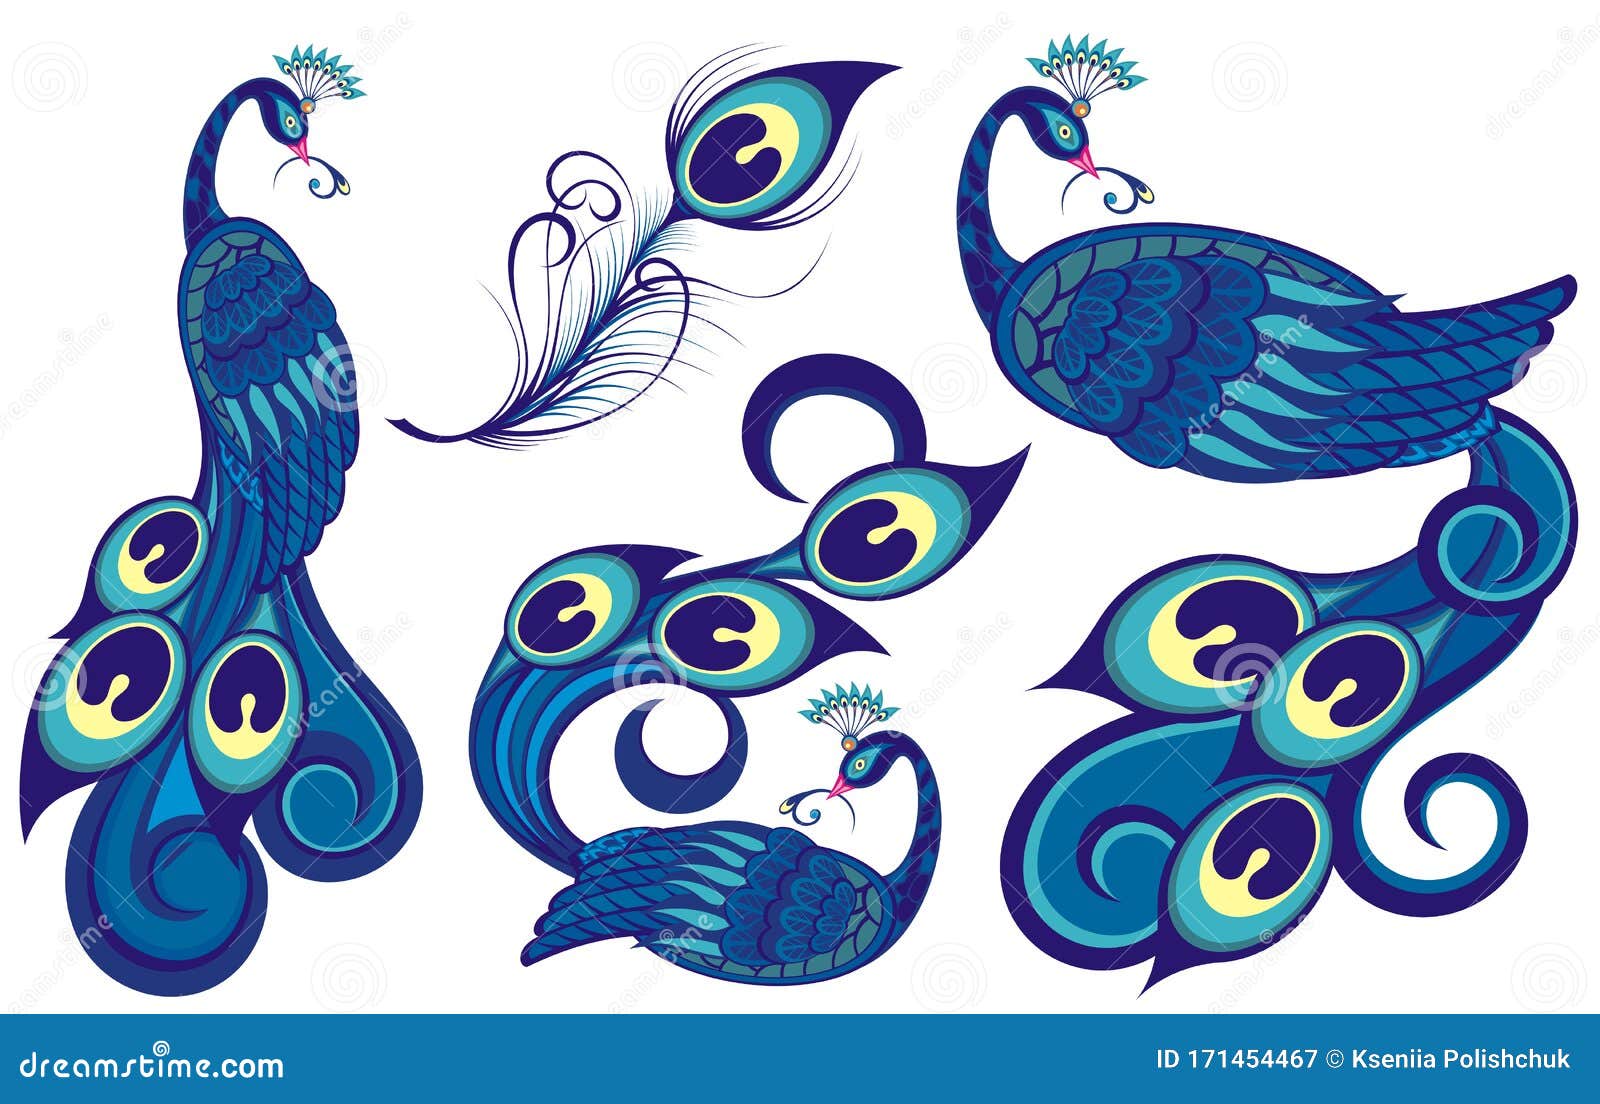 Dibujo De Dibujos Animados Decorativos De Pavos Reales Colección De Aves  Ilustración del Vector - Ilustración de arte, elemento: 171454467